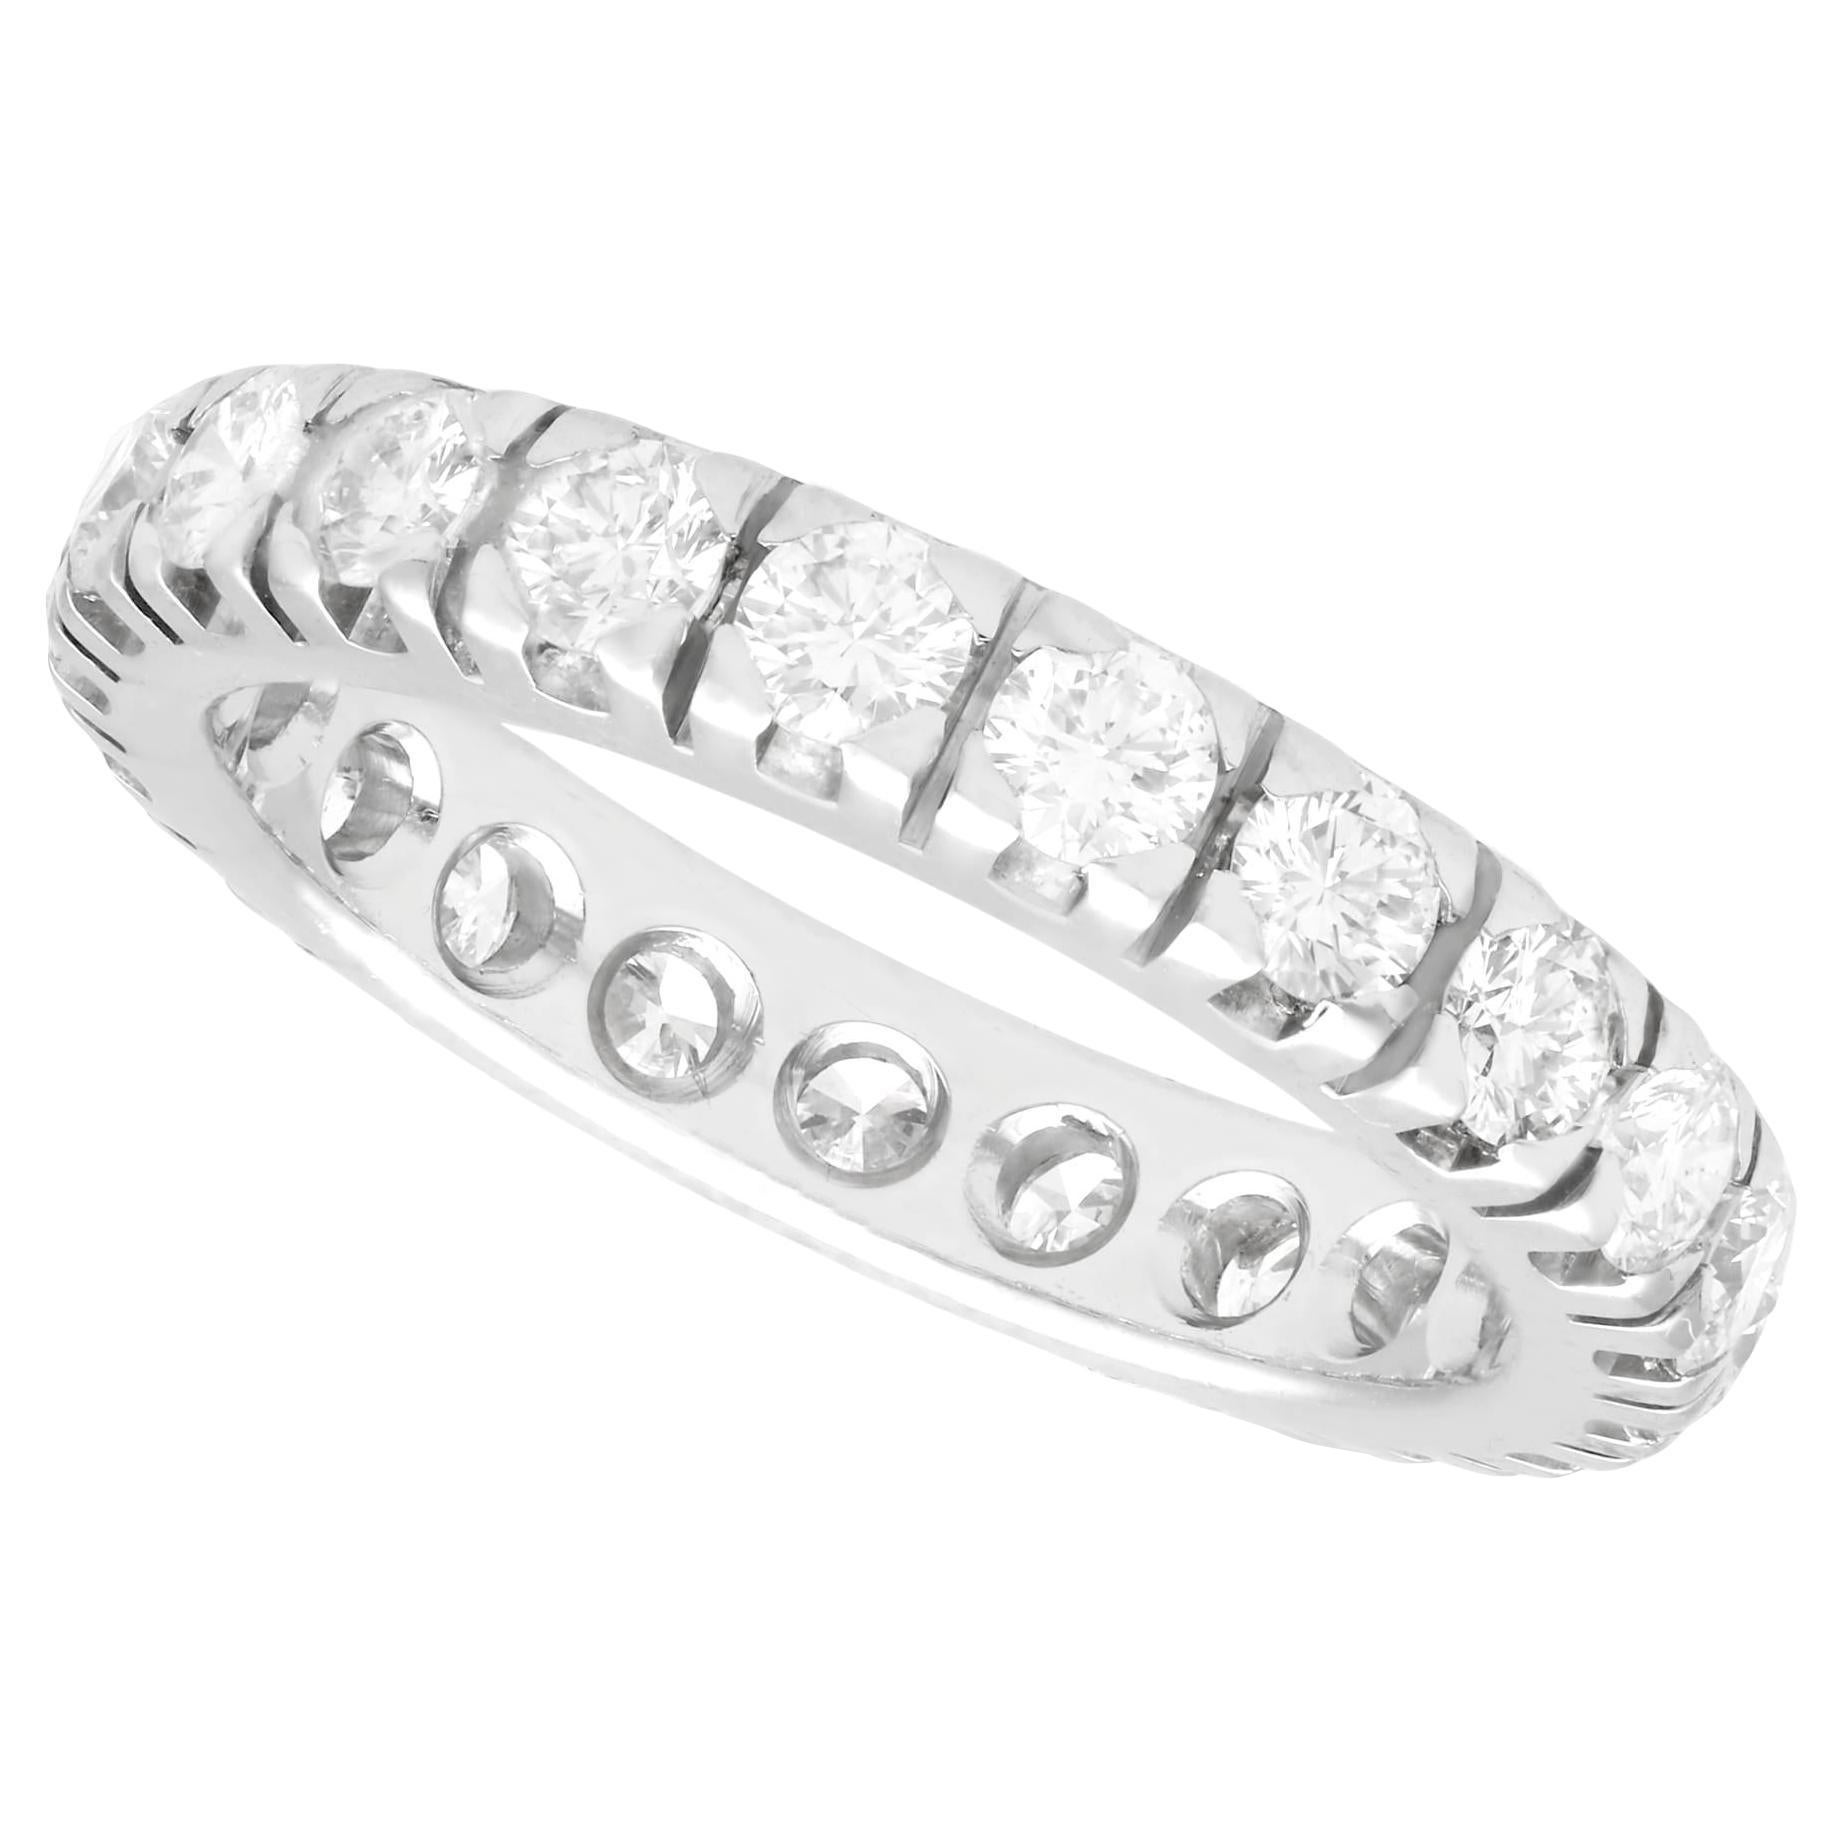 1980 Vintage 1.76 Carat Diamond and White Gold Full Eternity Ring (Bague d'éternité en or blanc et diamant)